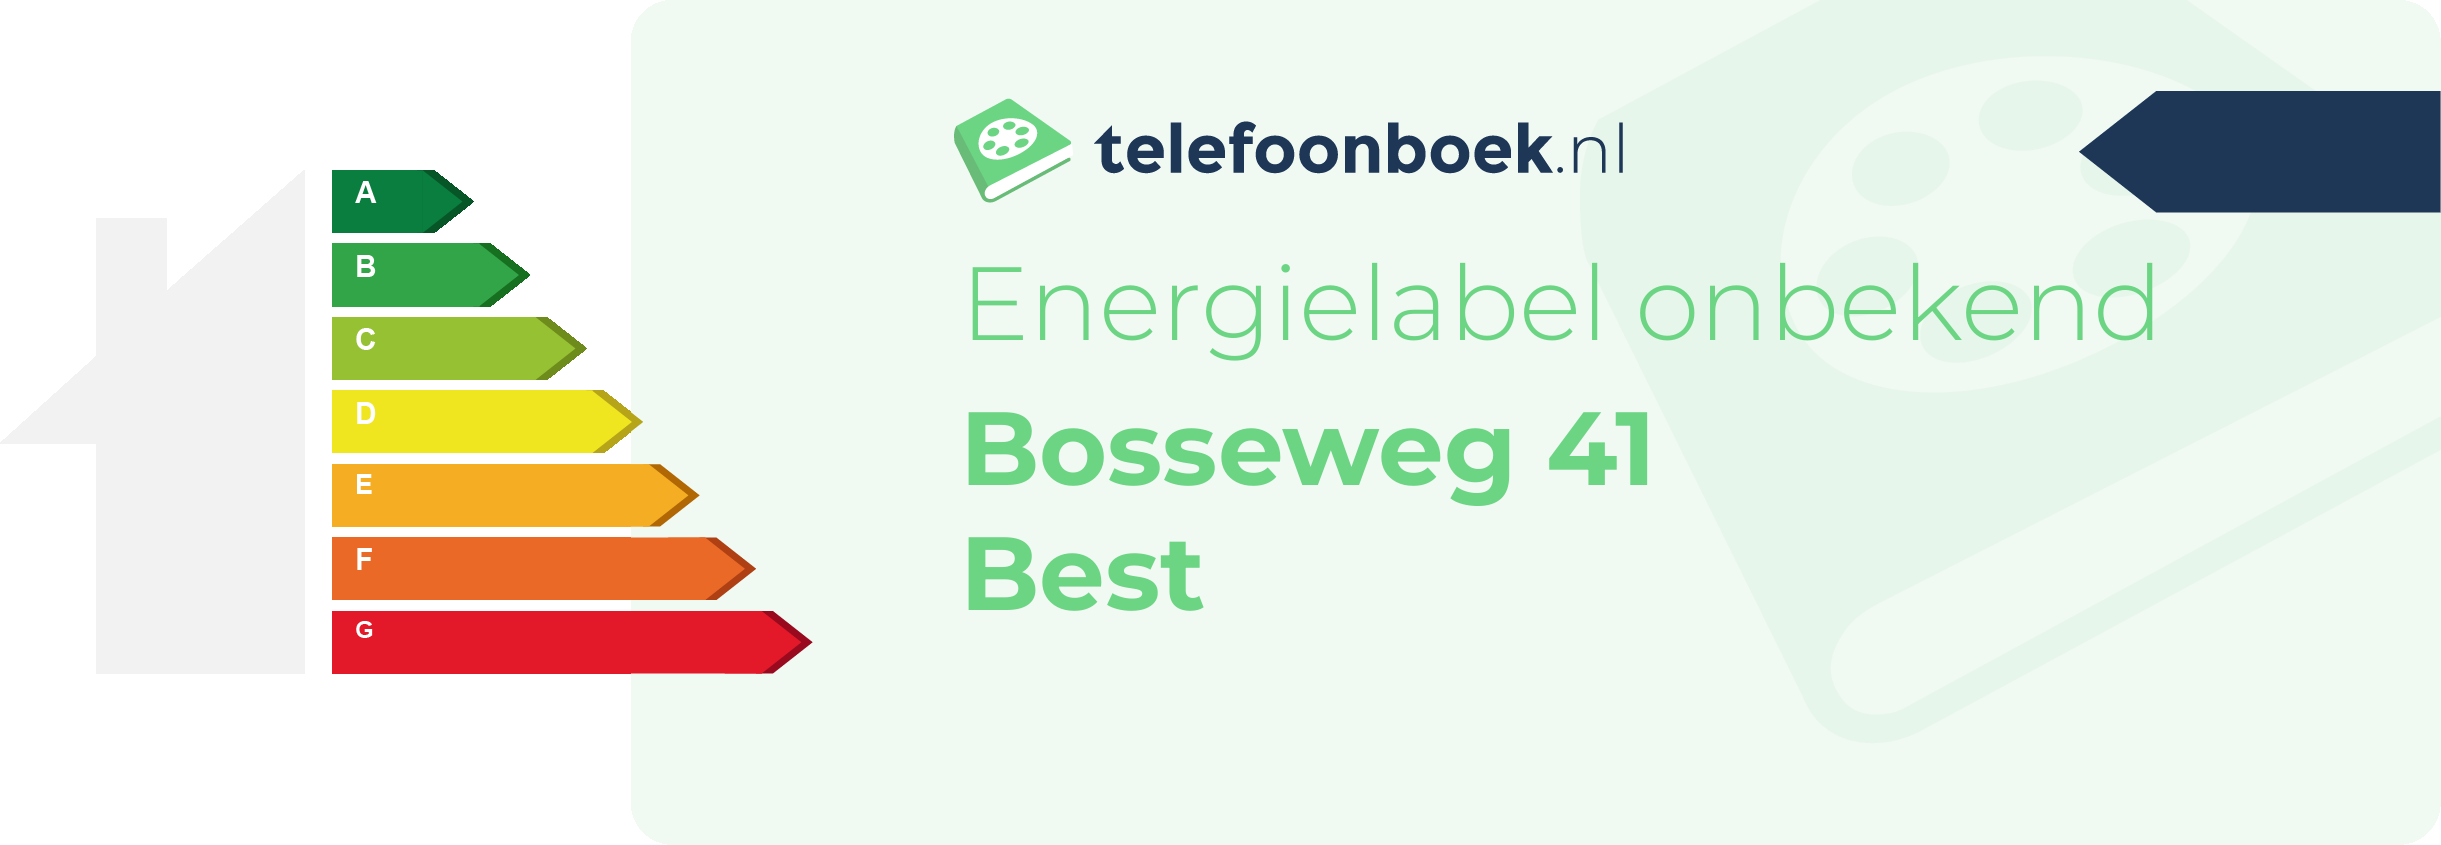 Energielabel Bosseweg 41 Best